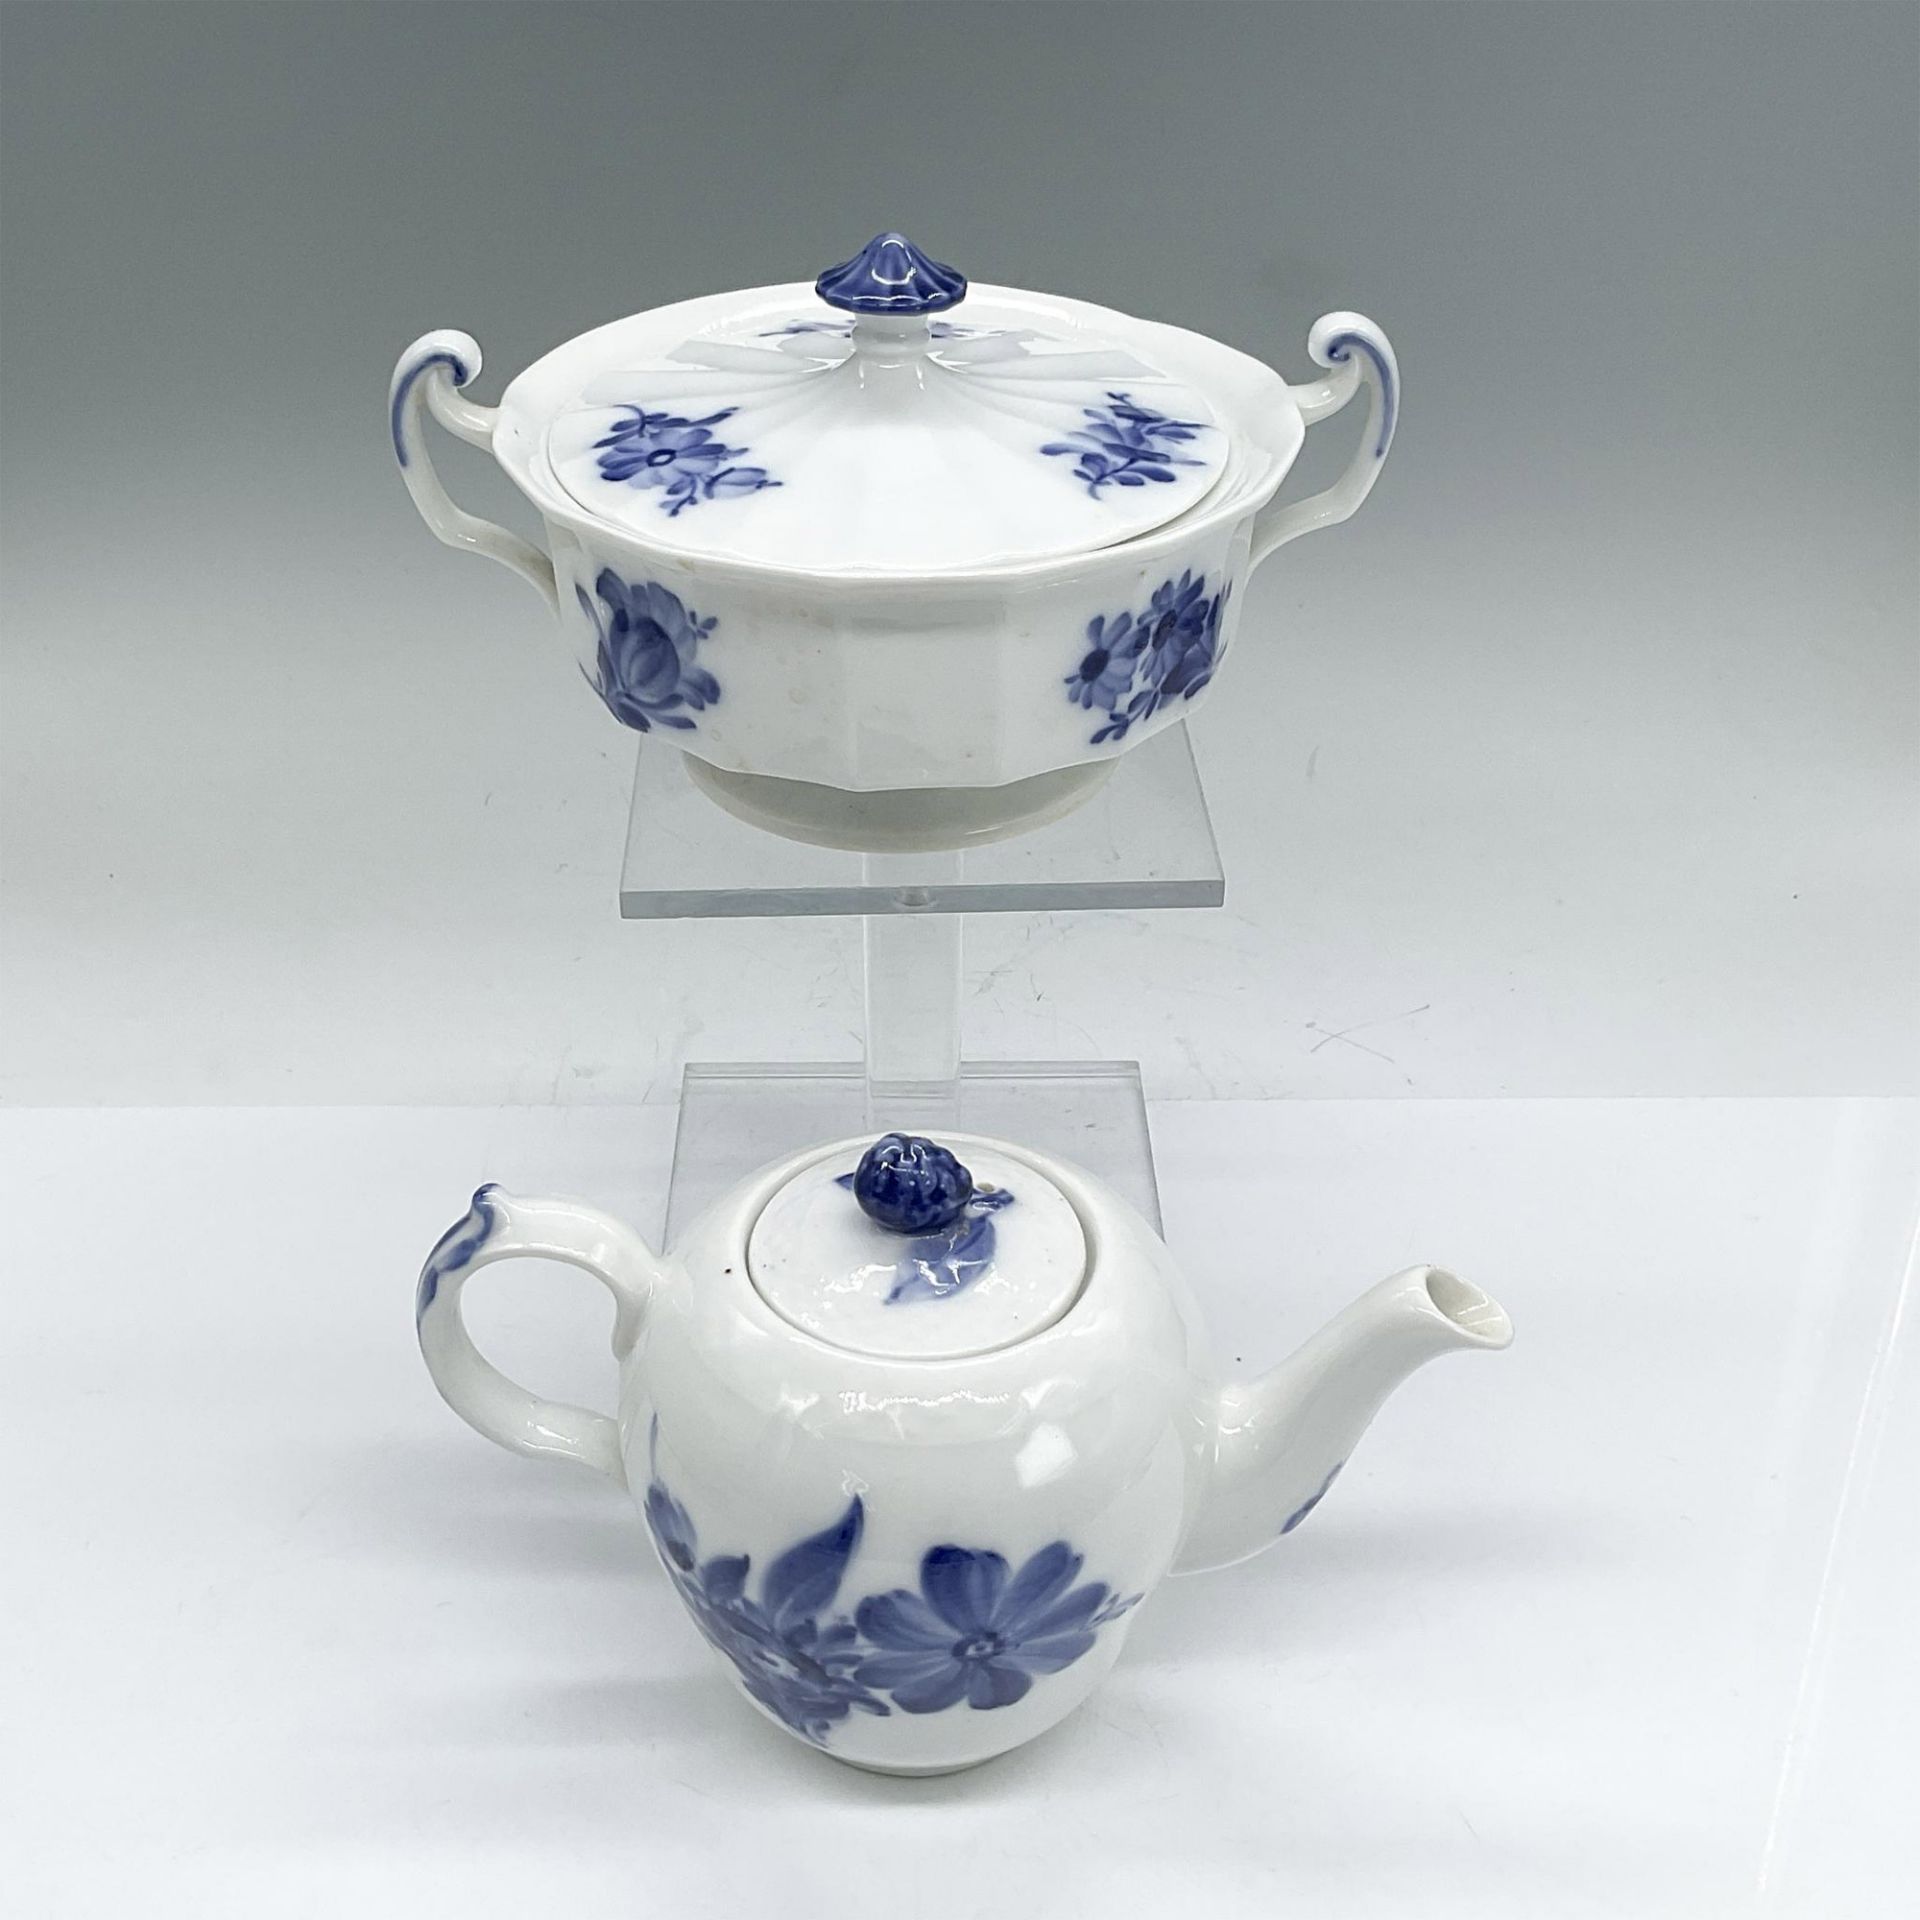 7pc Royal Copenhagen Tea Service, Teapots/Cups/Sugar/Pitcher - Image 6 of 13